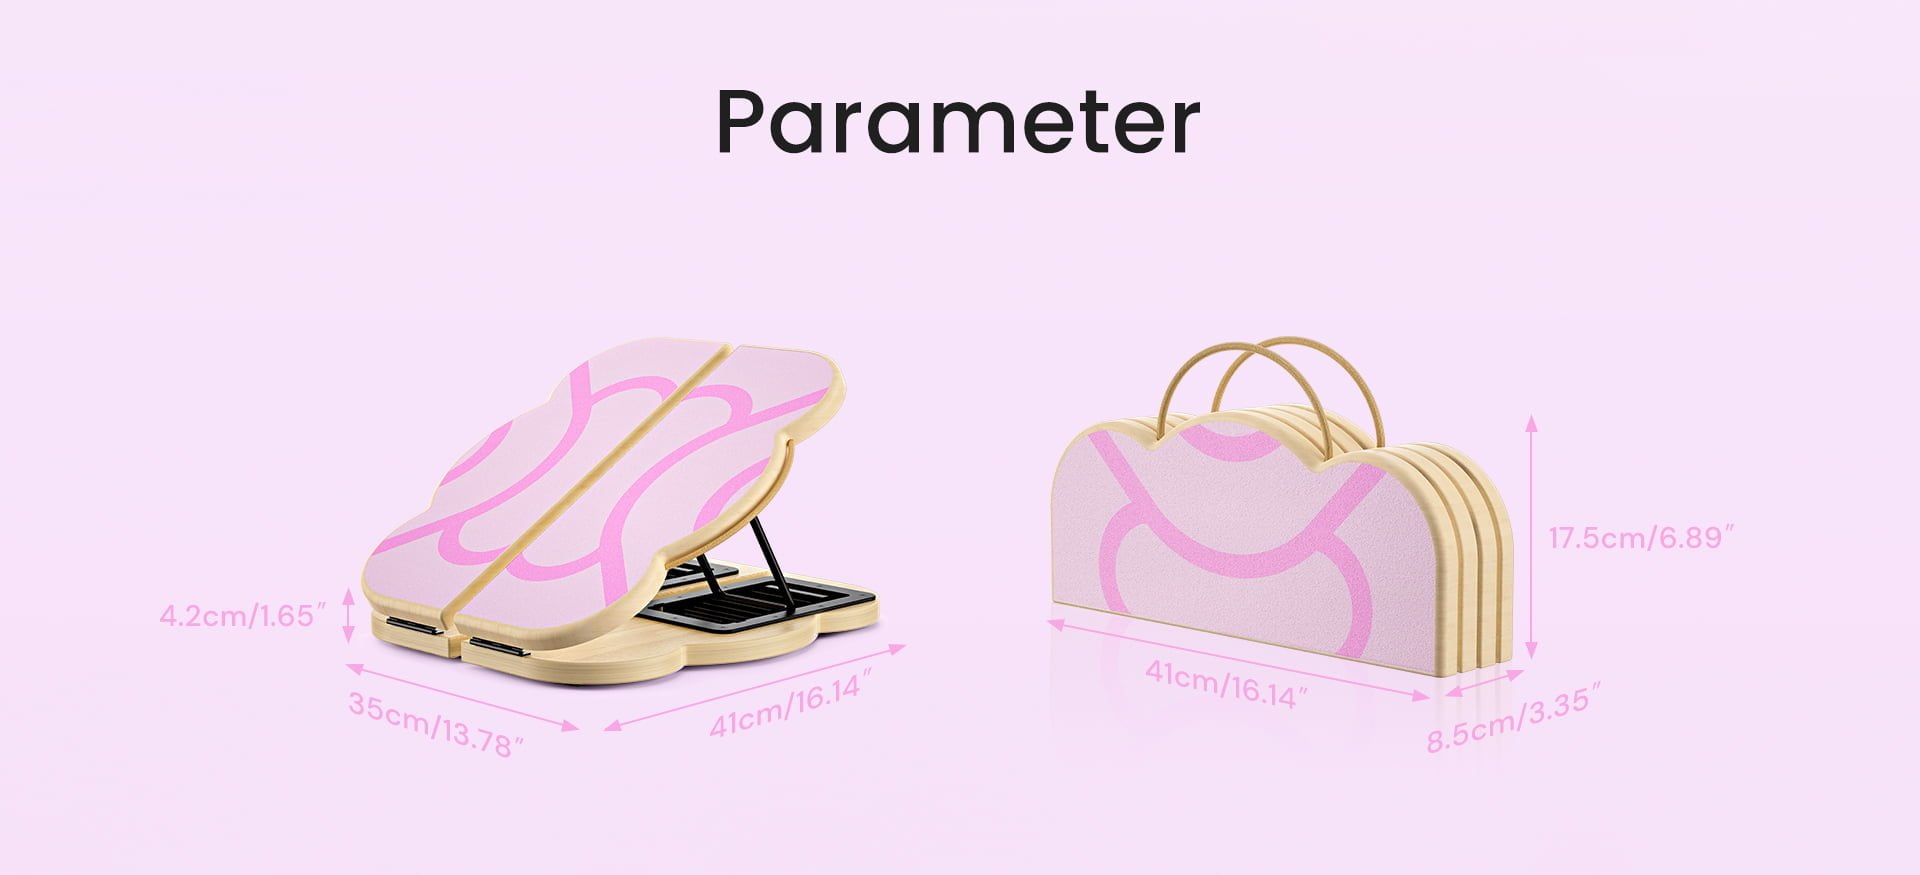 Parameter